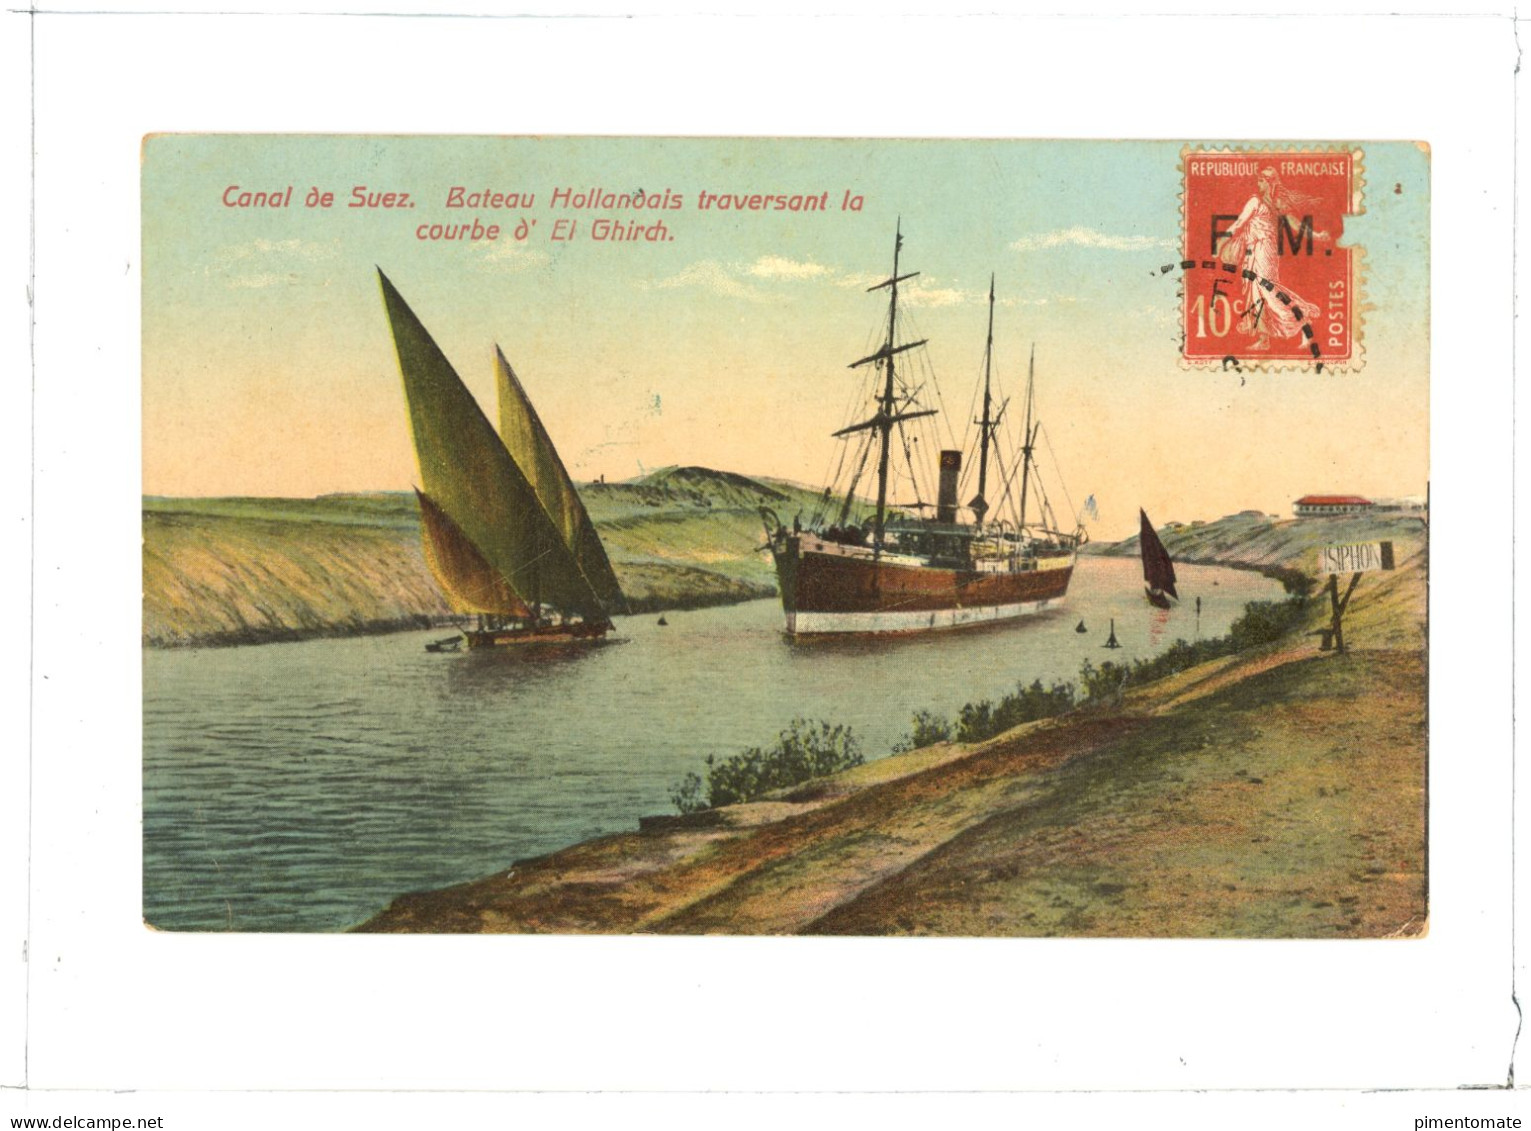 CANAL DE SUEZ BATEAU HOLLANDAIS TRAVERSANT LA COURBE D'EL GHIRCH 1914 - Sues